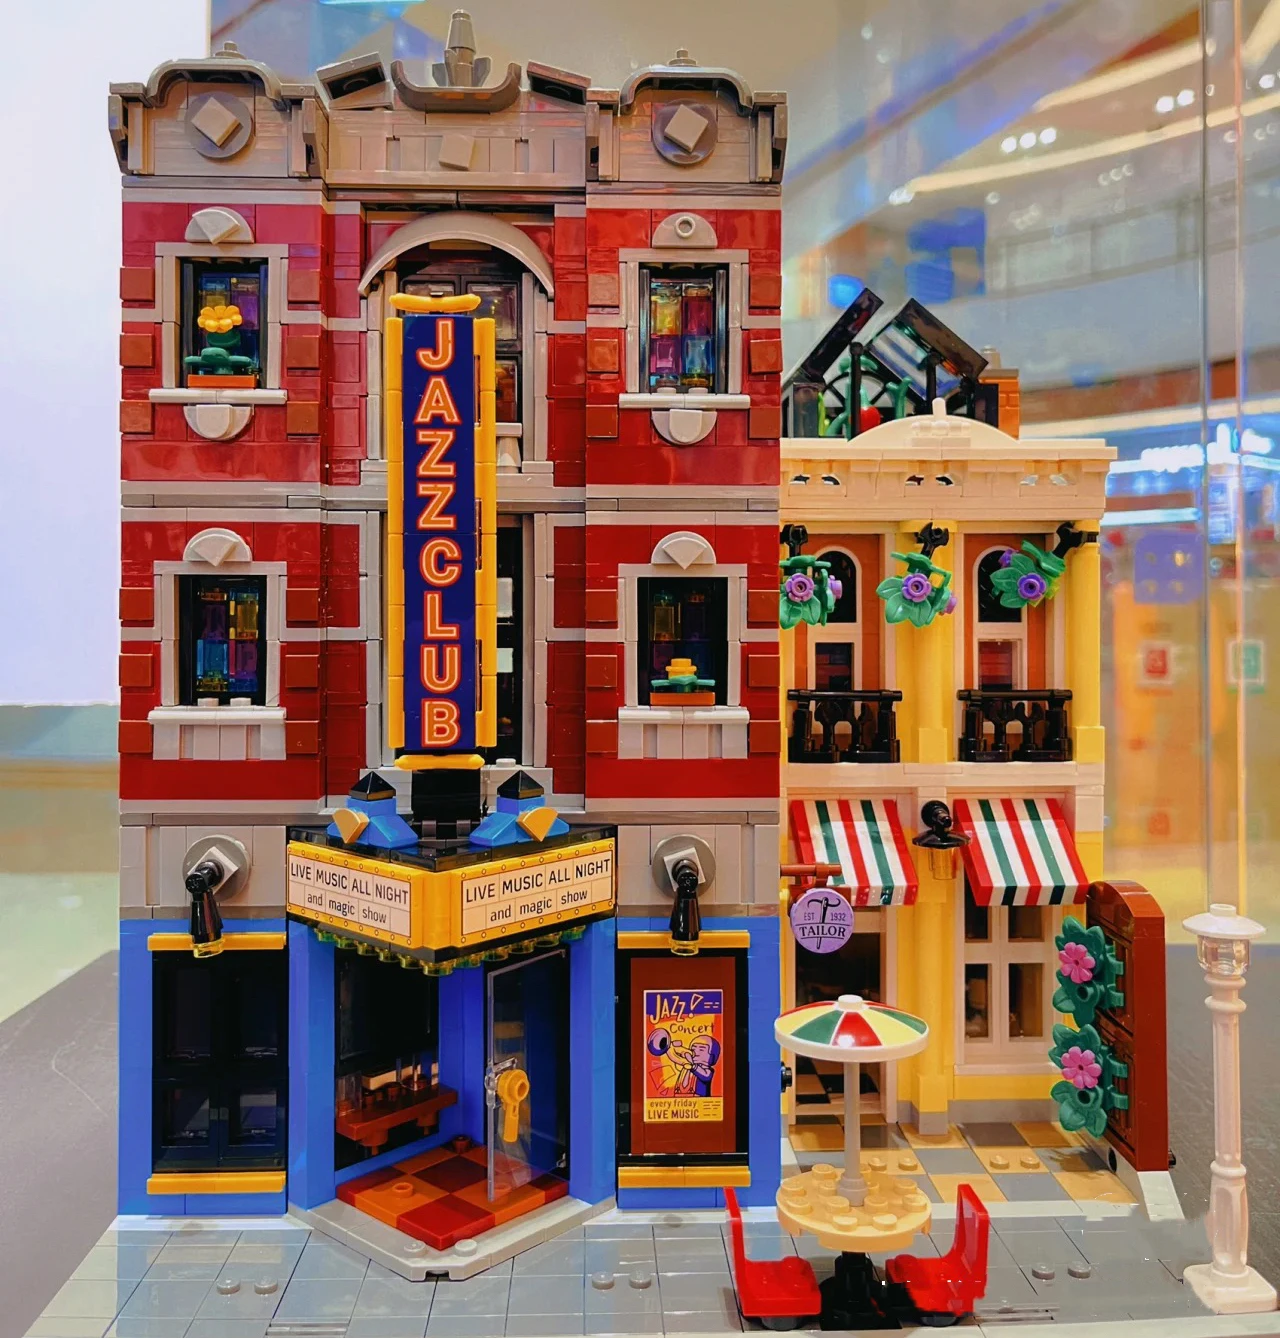 Създаване на Джаз-клуб Expert pizza shop MOC модел единица дома строителни блокове 10312 съвместими 2899 детски играчки в подарък